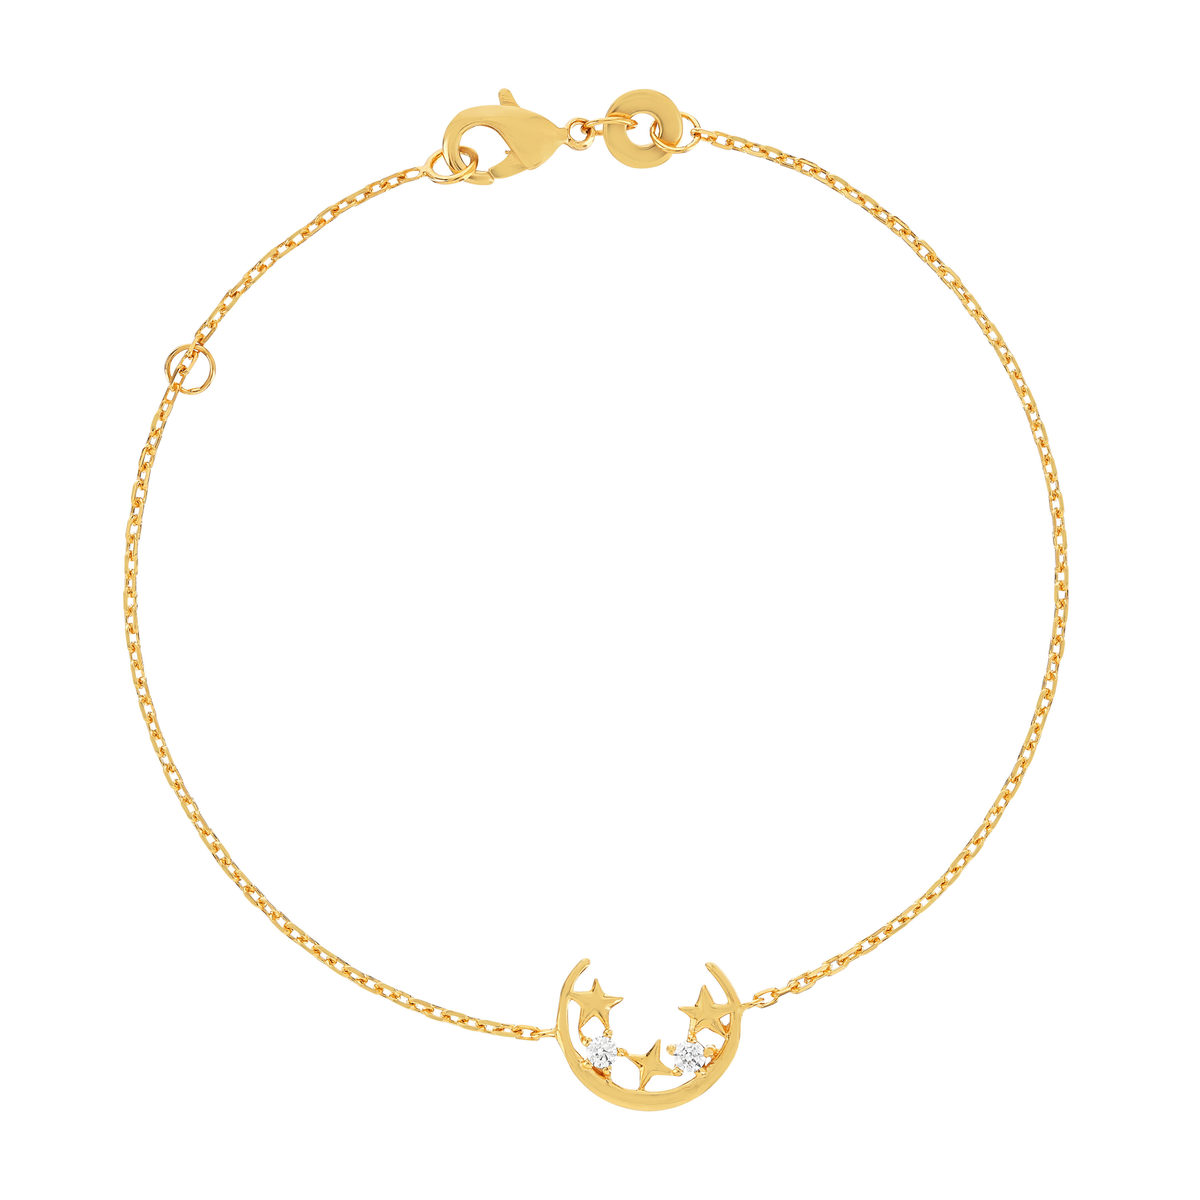 Bracelet plaqué or jaune motif lune et étoiles zirconias 18 cm